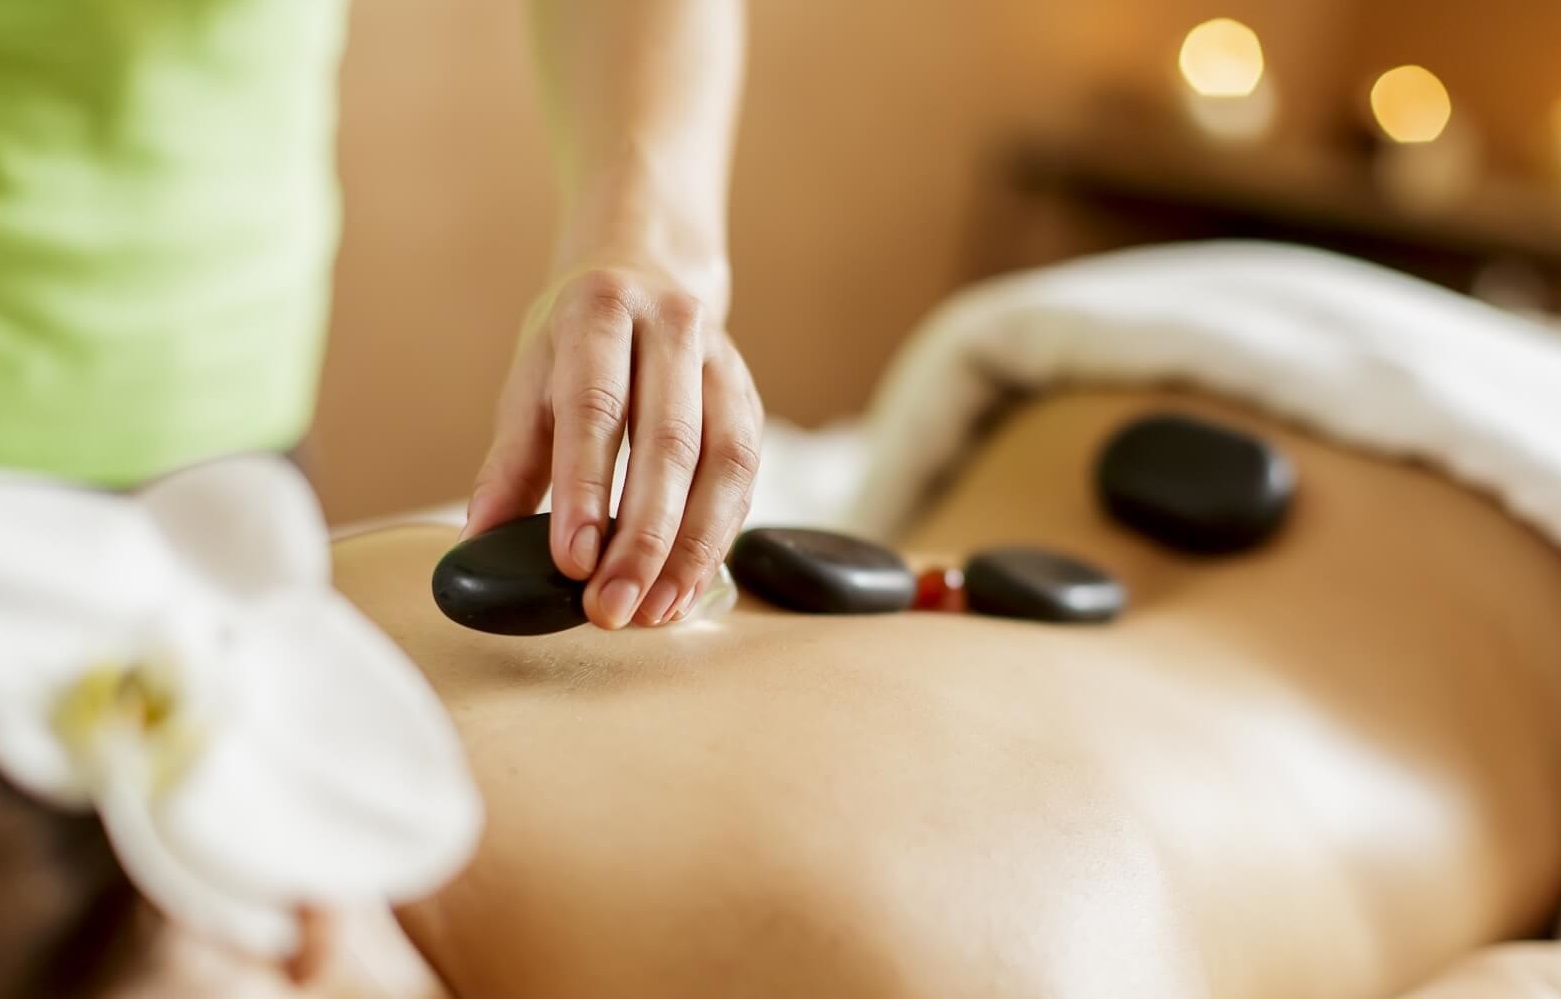 Phương pháp massage đá nóng sử dụng lượng nhiệt khơi thông mạch máu bị tắc